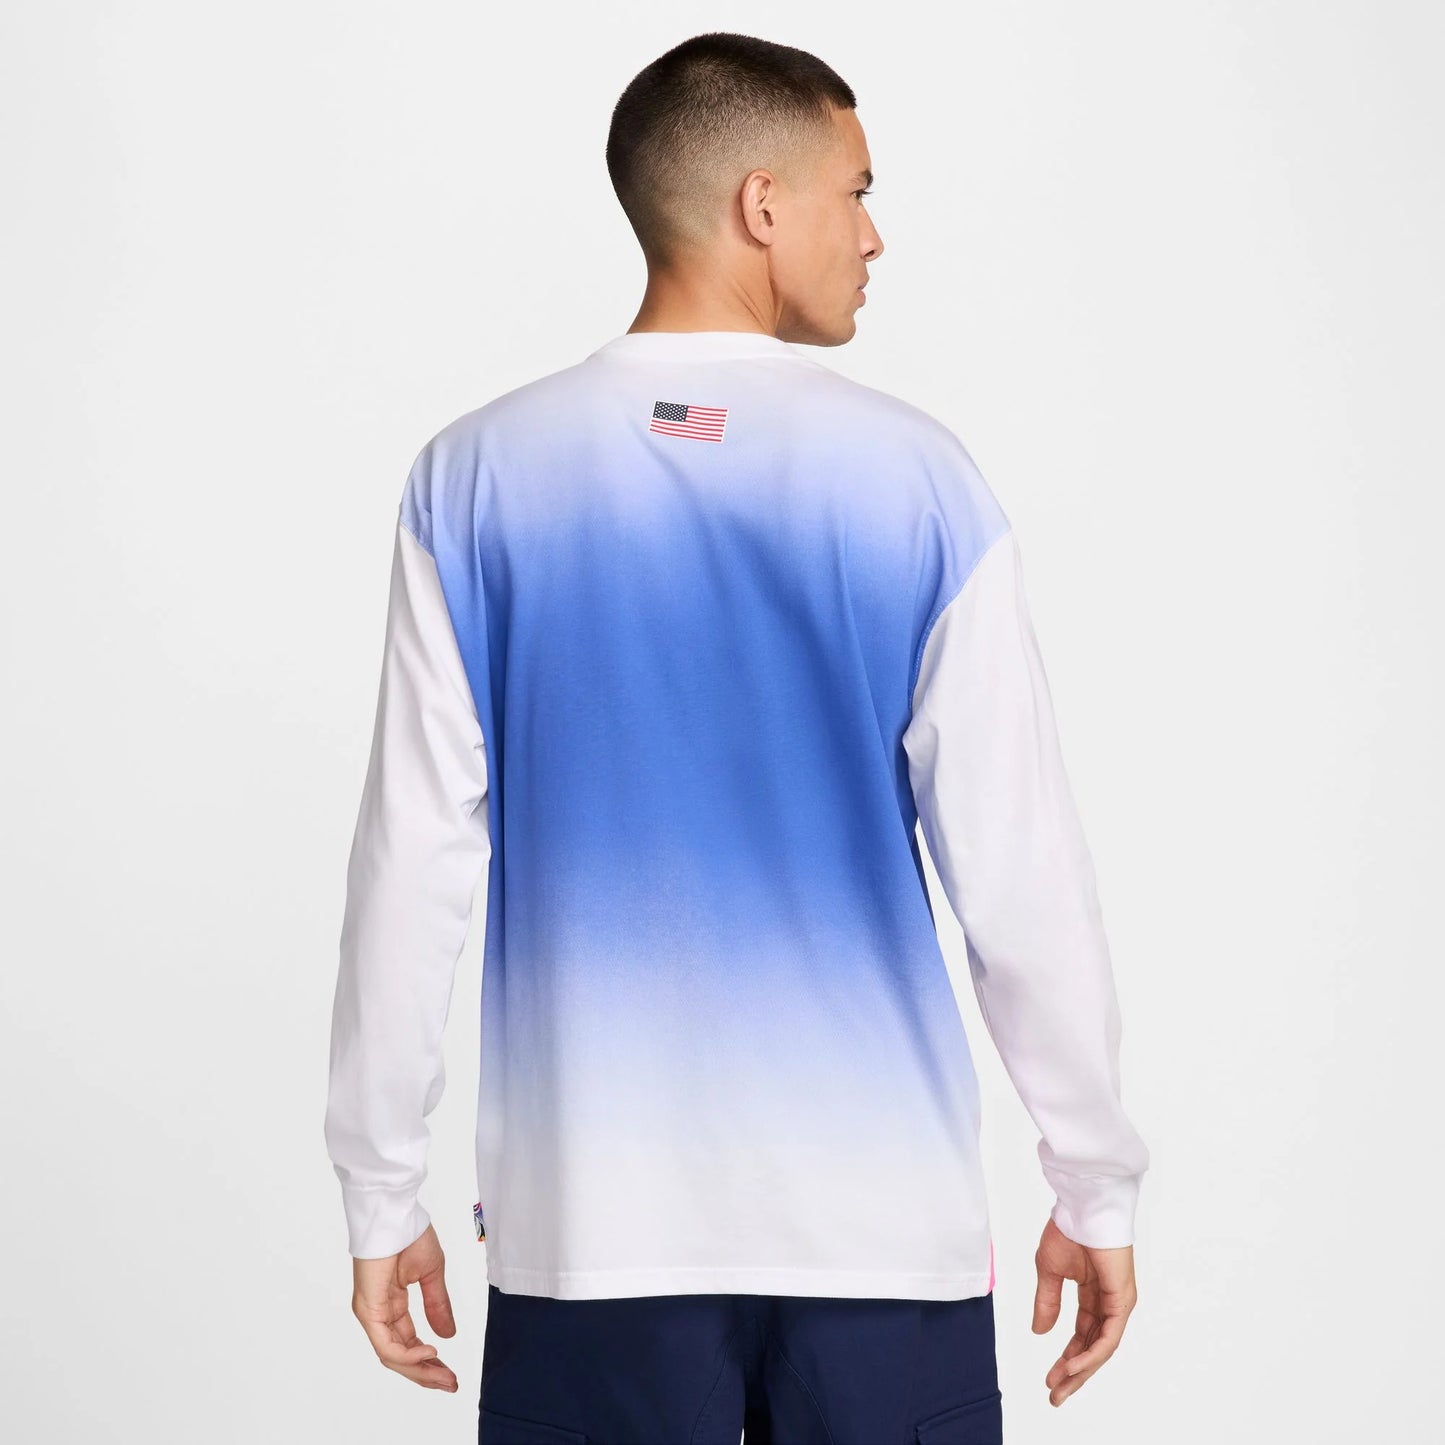 Nike SB Mens Long Sleeve Skate Tee White/Blue